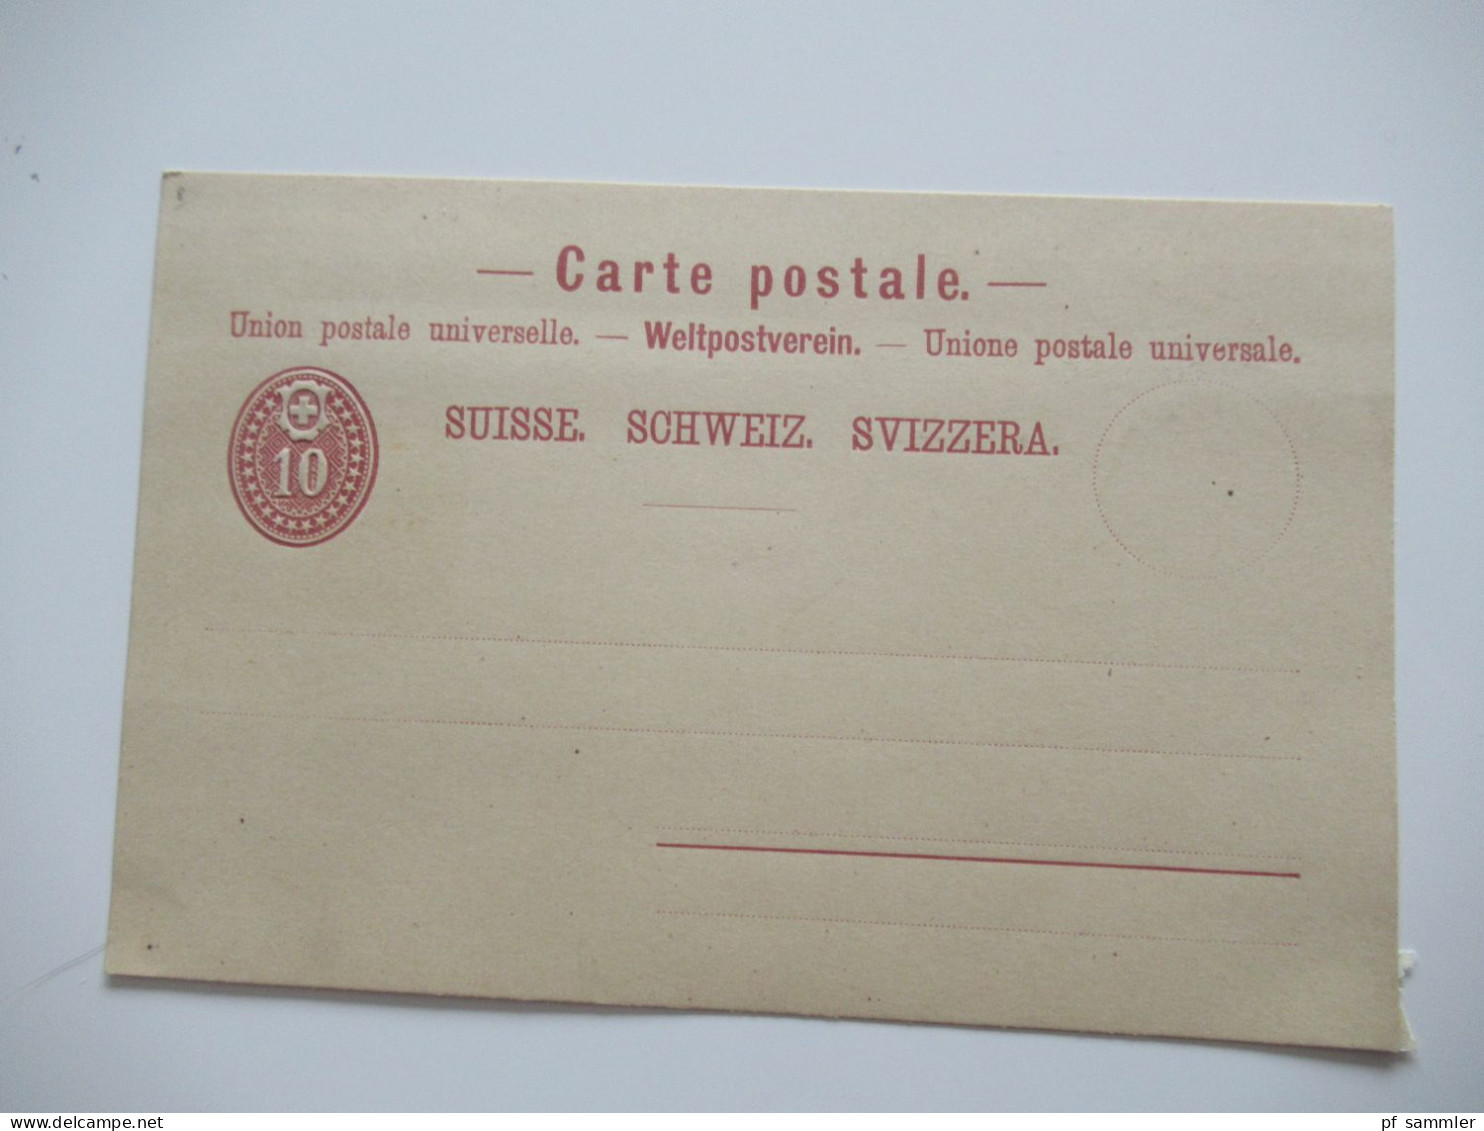 Schweiz interessanter Ganzsachen Posten ab 1871 / gebraucht und ungebraucht! insgesamt 16 Stück